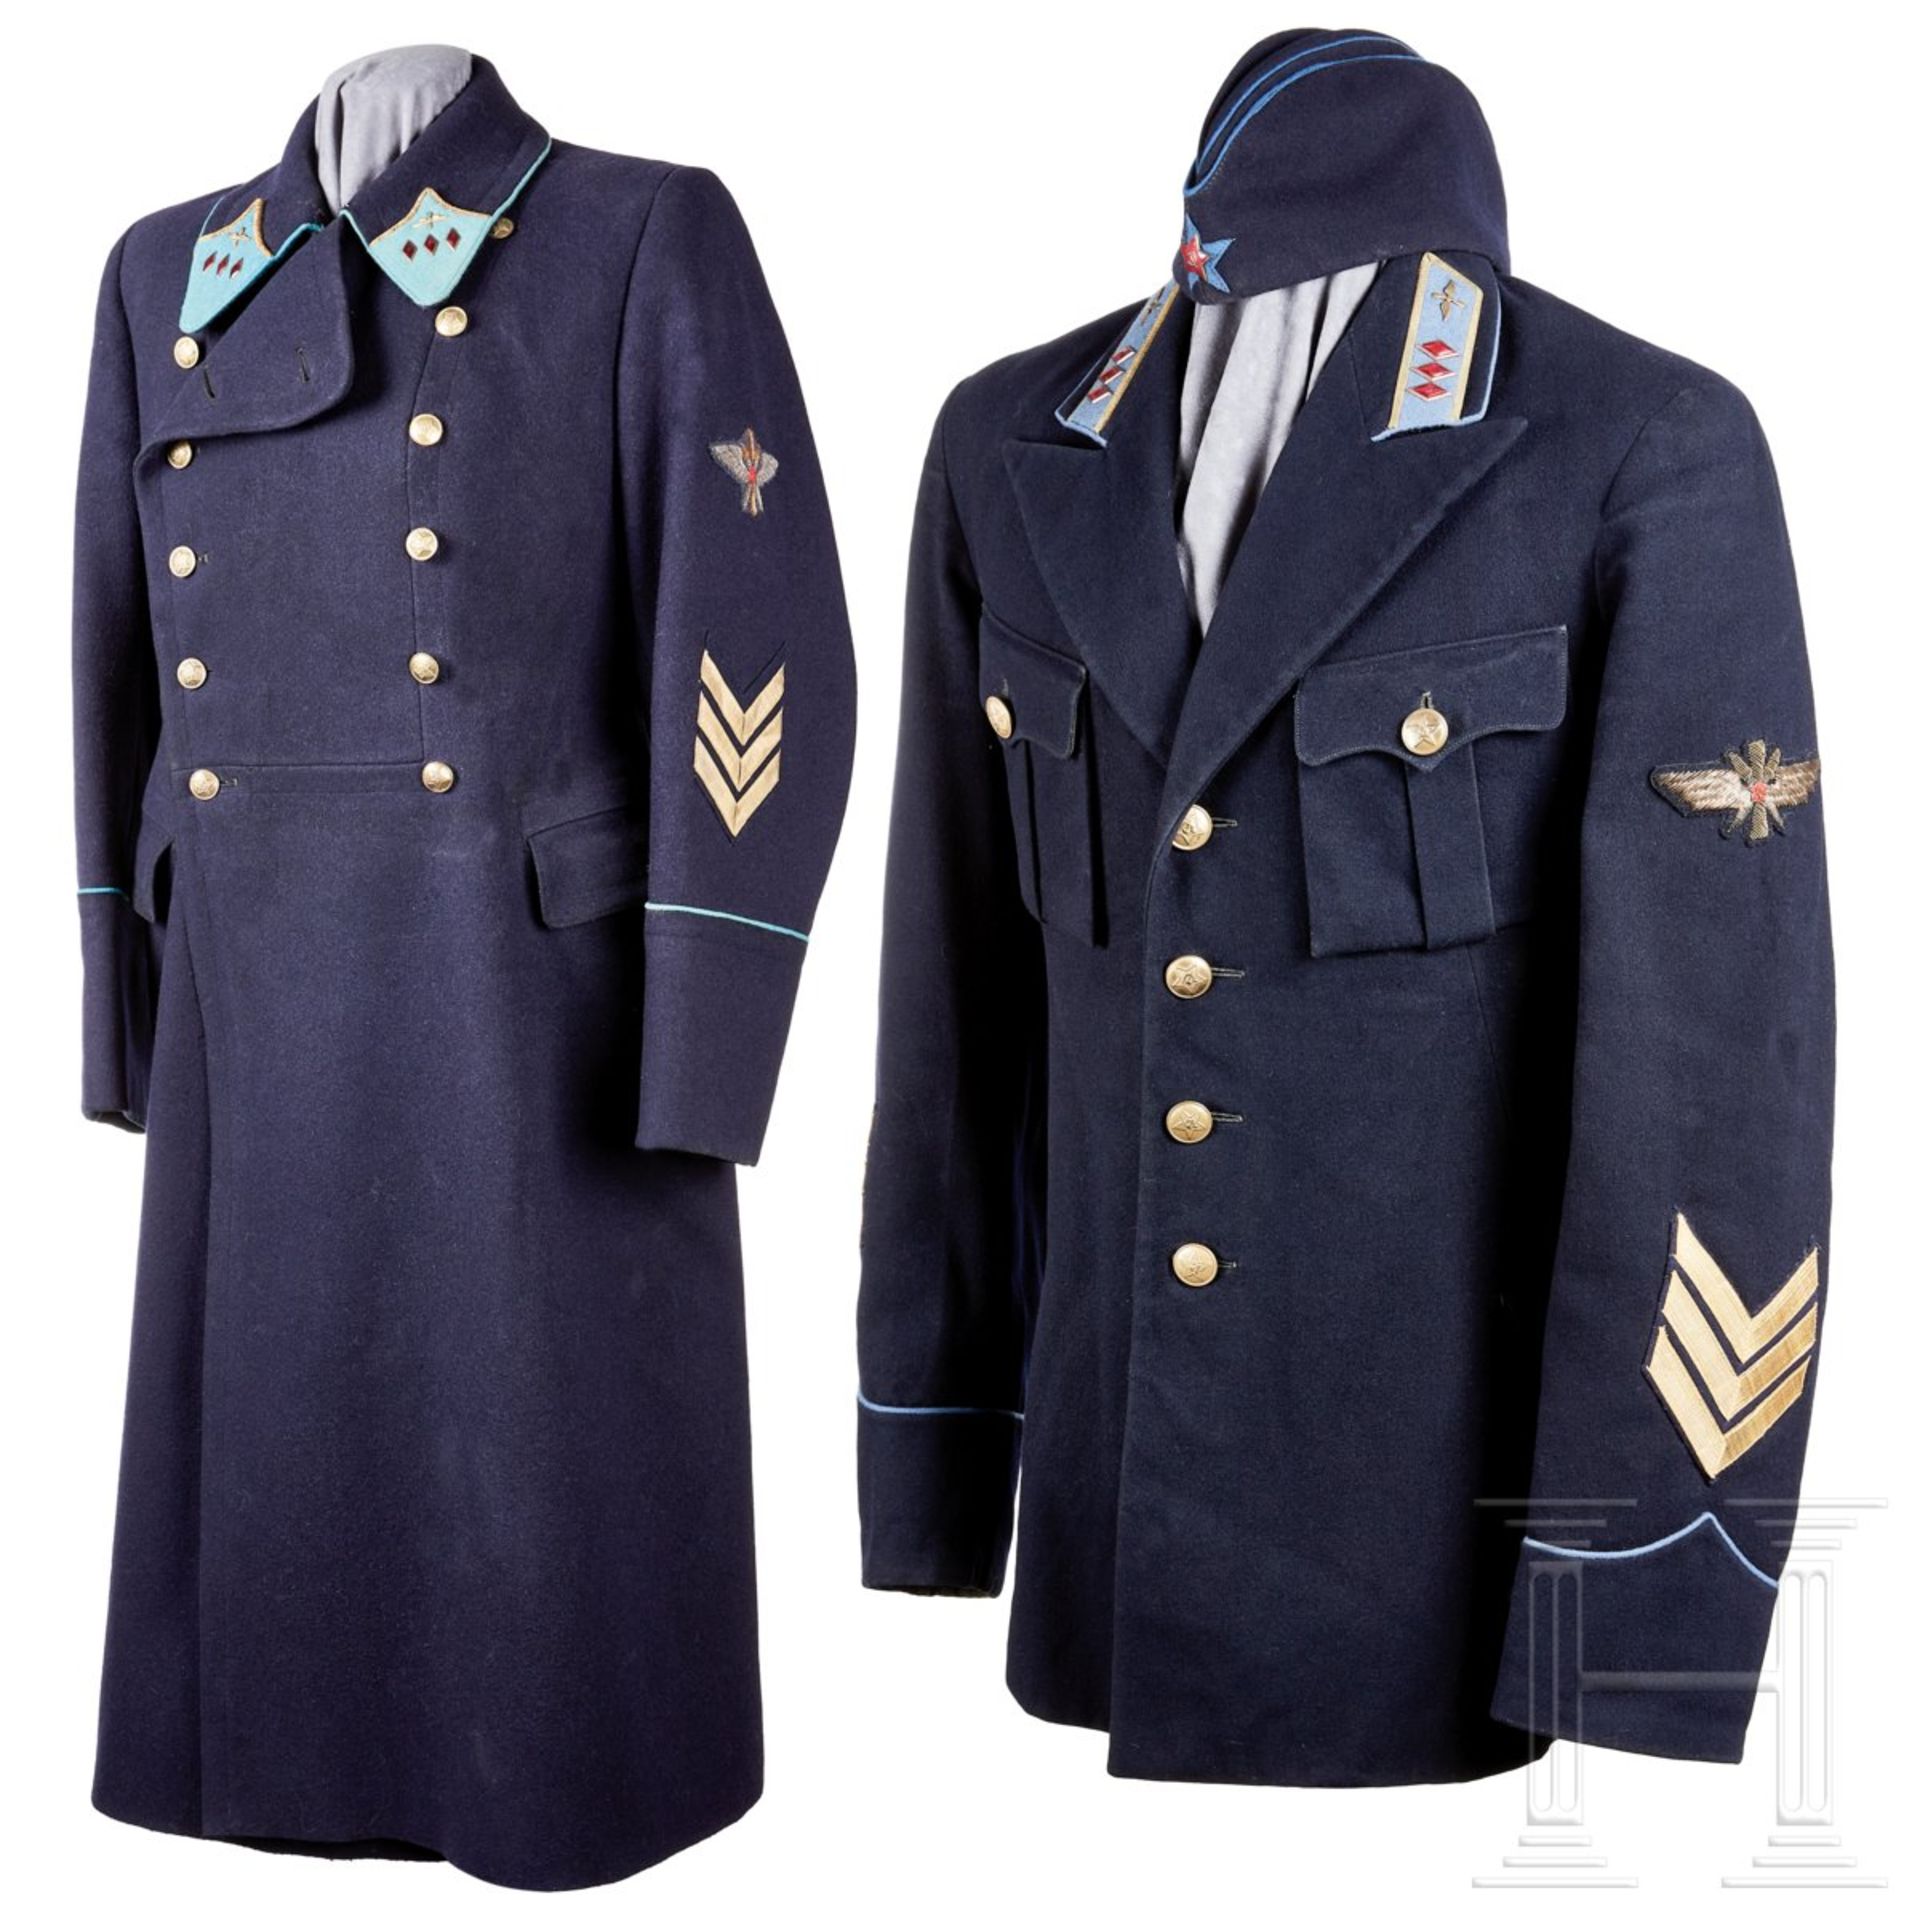 <de>Uniform eines Oberbefehlshabers der Luftwaffe<br>Uniformrock aus dunkelblauem Wollstoff, offener